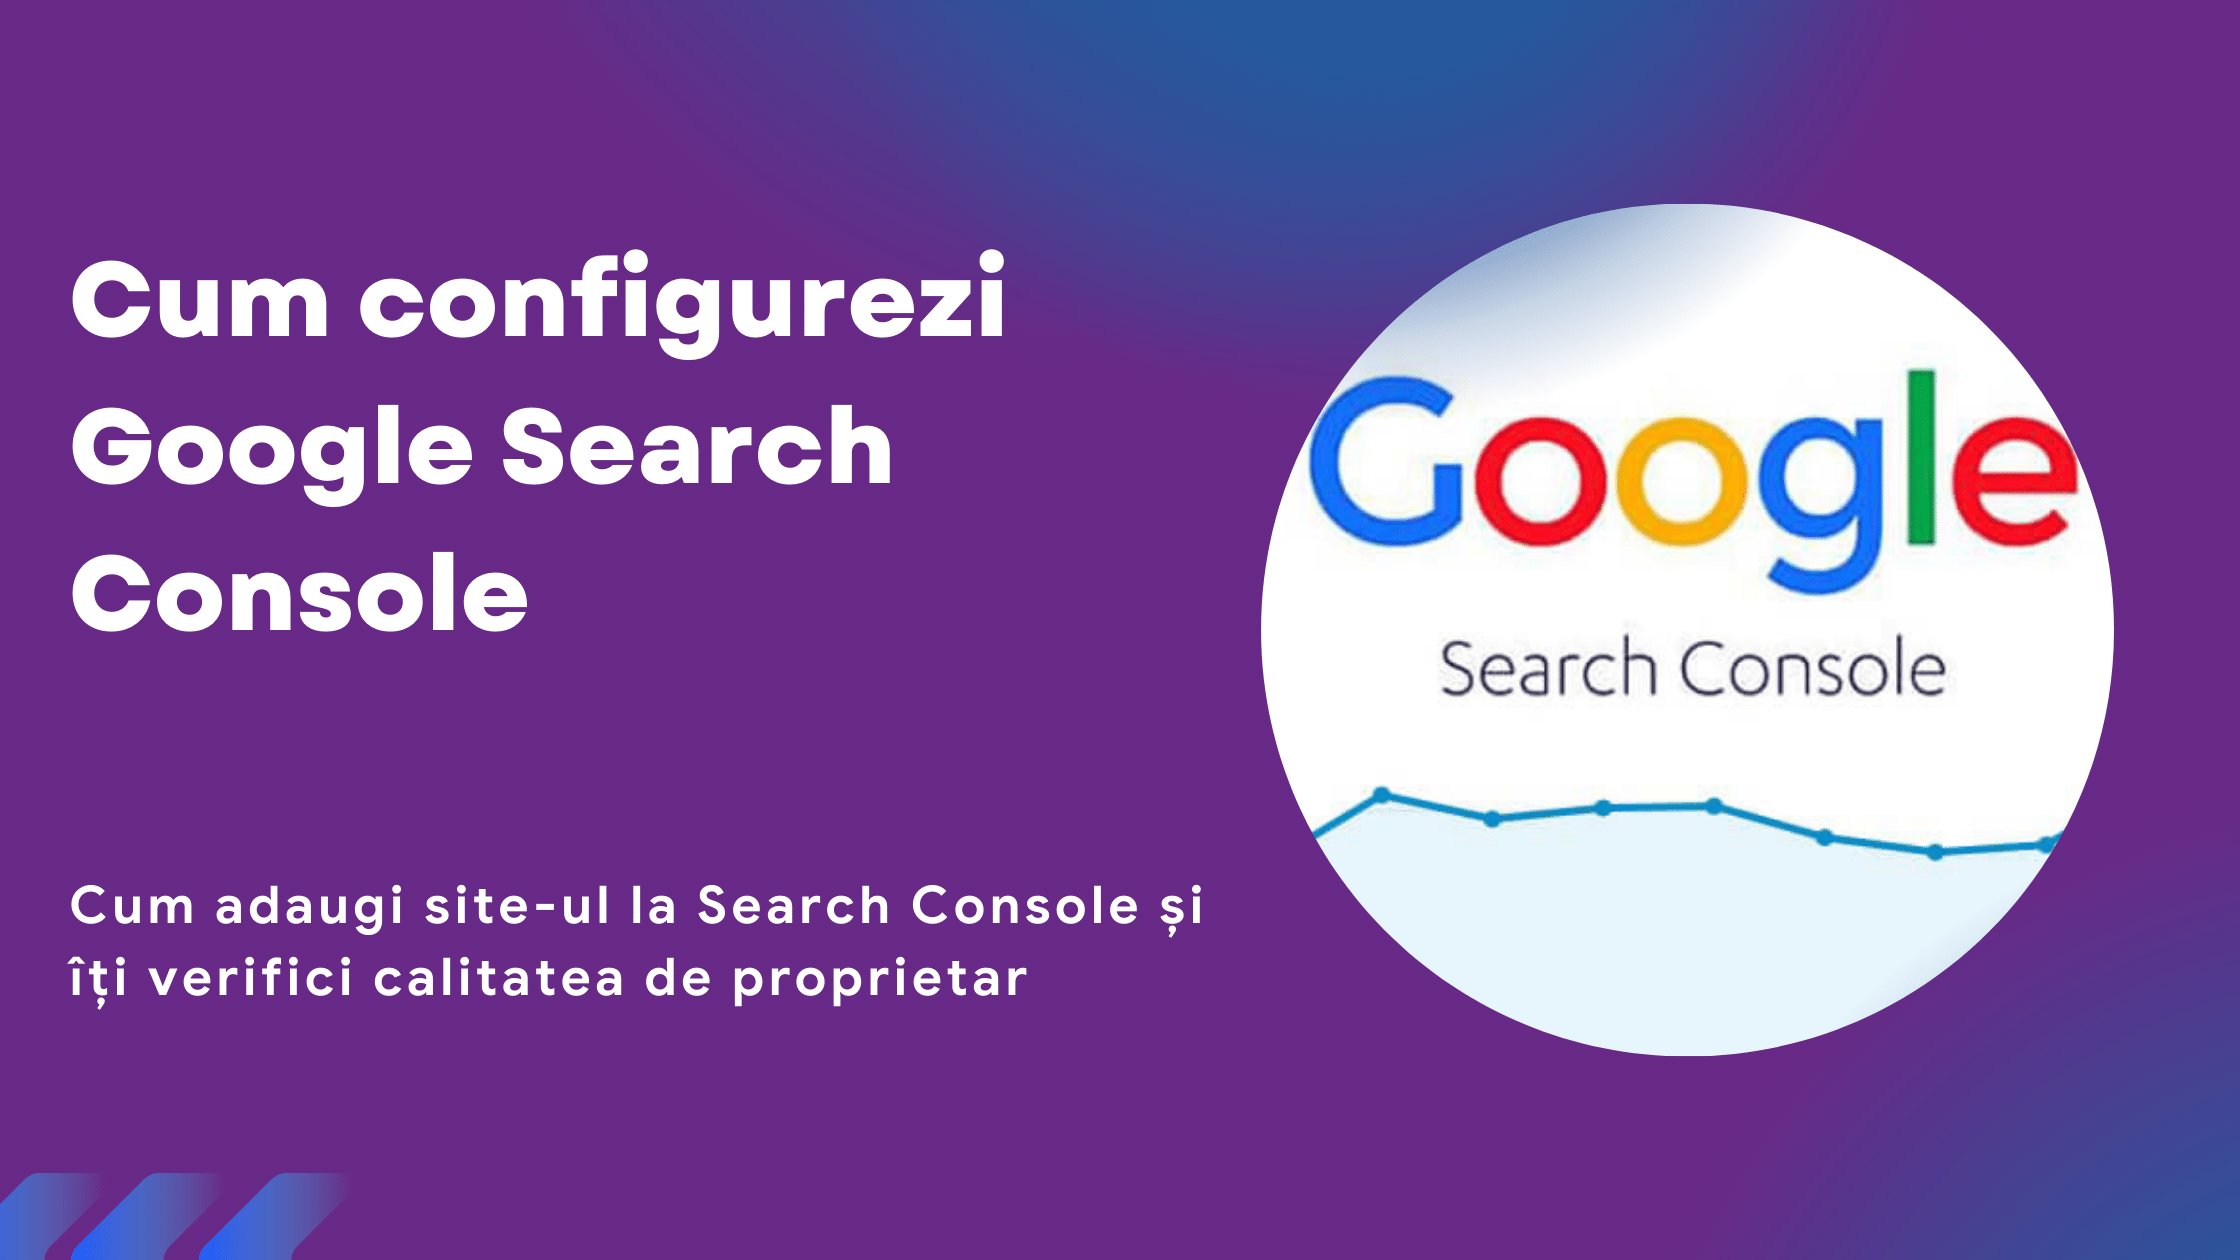 Cum configurezi Google Search Console